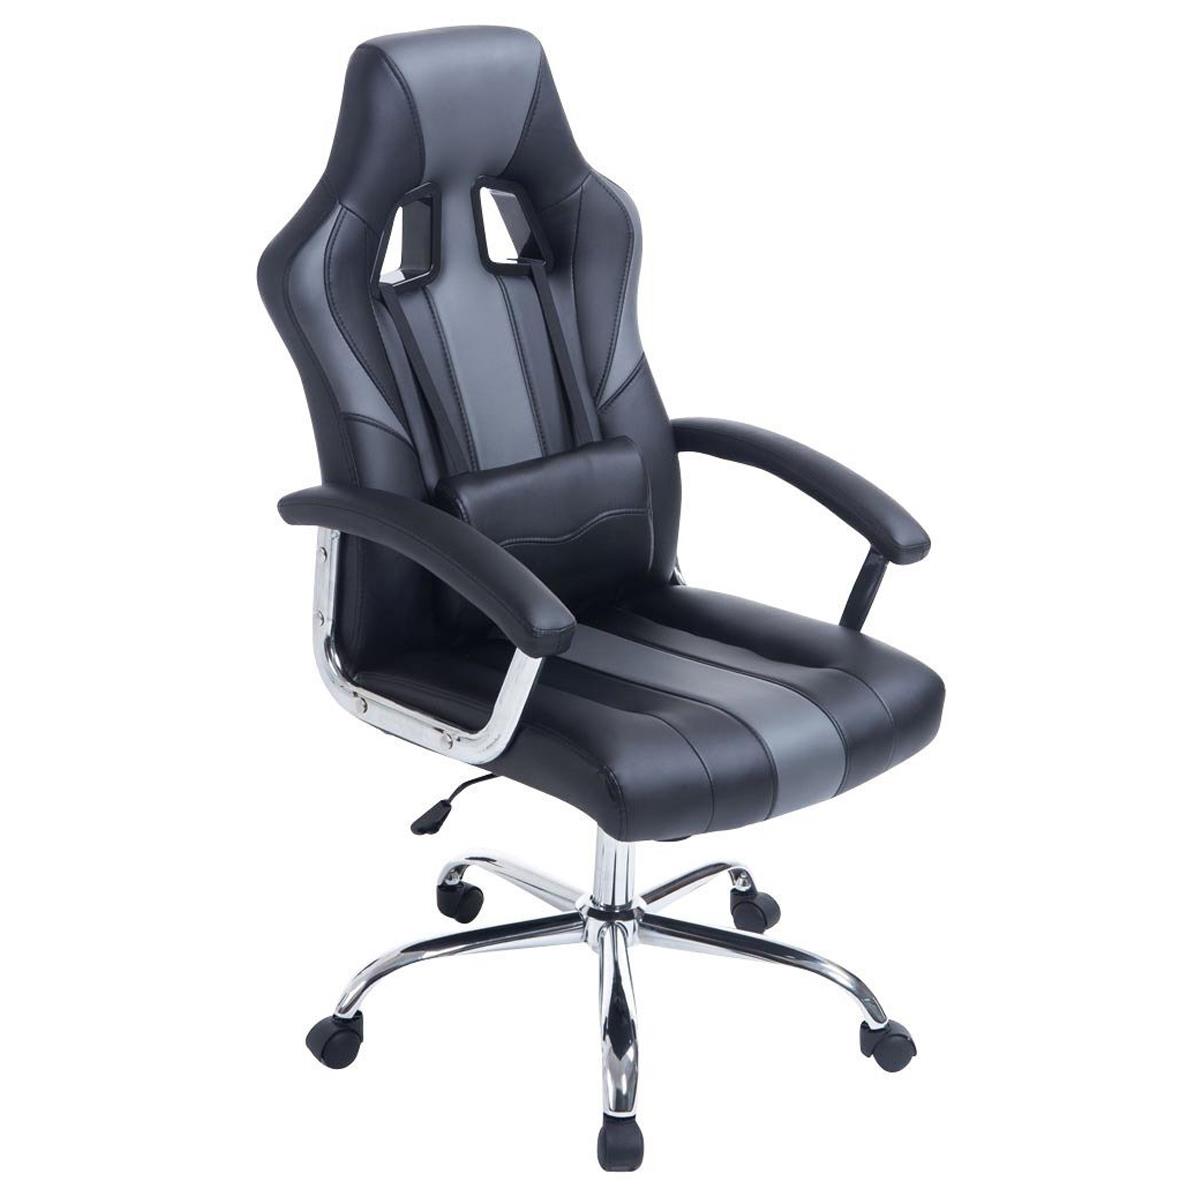 Gaming-Stuhl INDOS, sportliches Design, hoher Komfort, Metallfußkreuz, Lederbezug, Farbe Schwarz / Grau